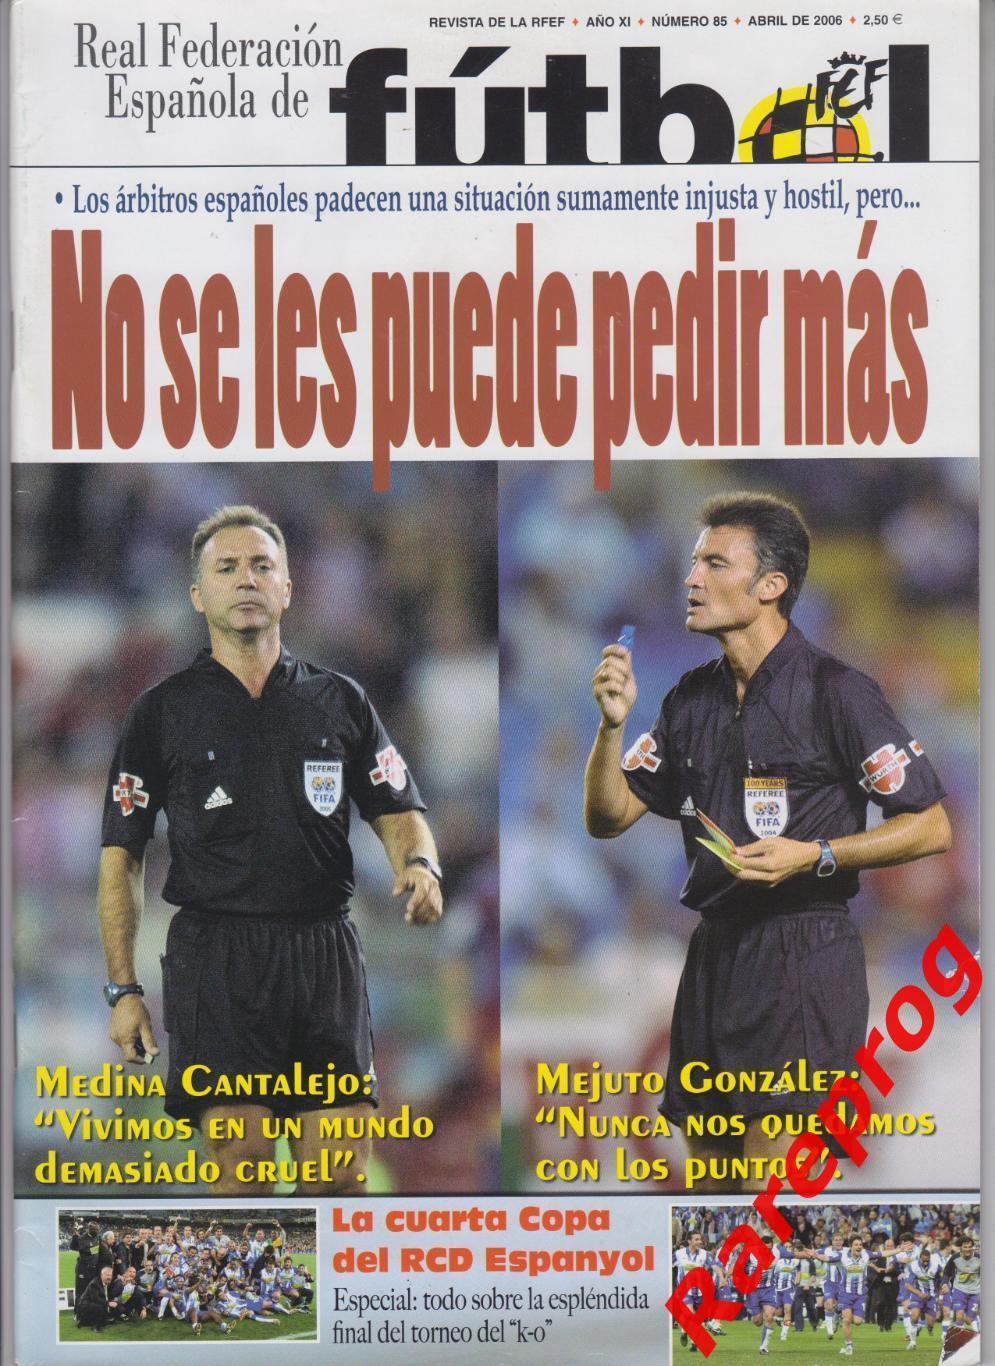 журнал Футбол RFEF Испания № 85 апрель 2006 - постер Эспаньол Cesc Fabregas